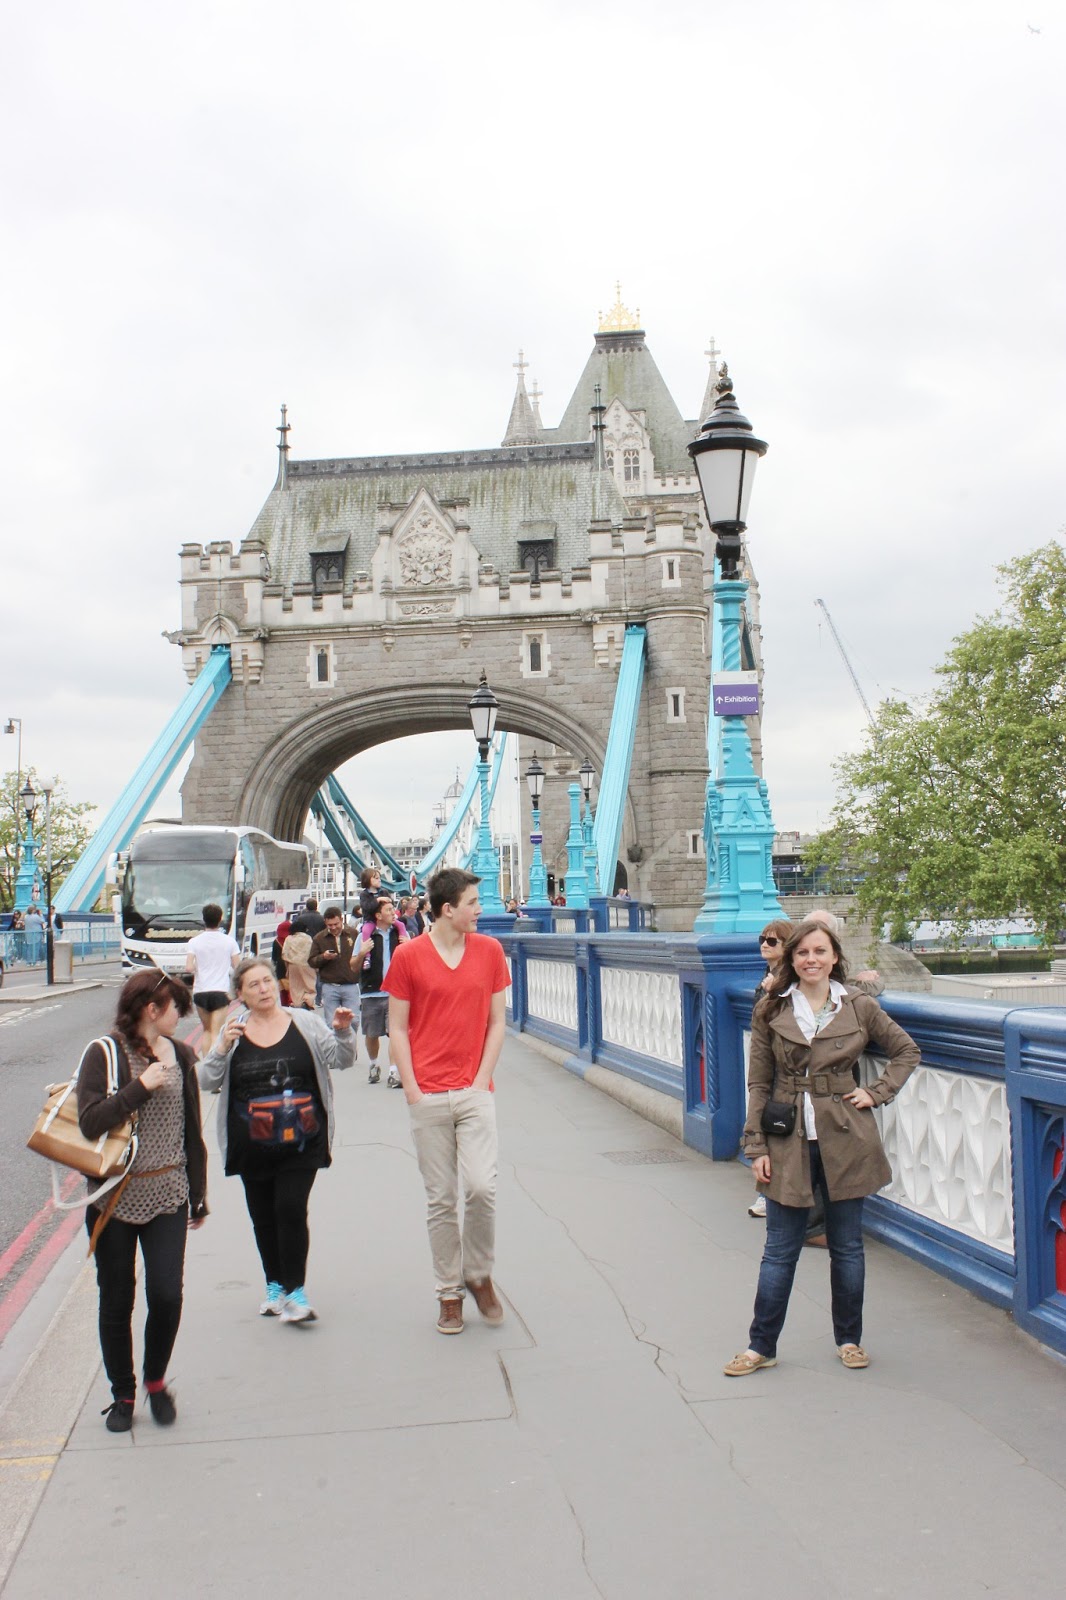 Walking tour of the Tower Bridge London. 